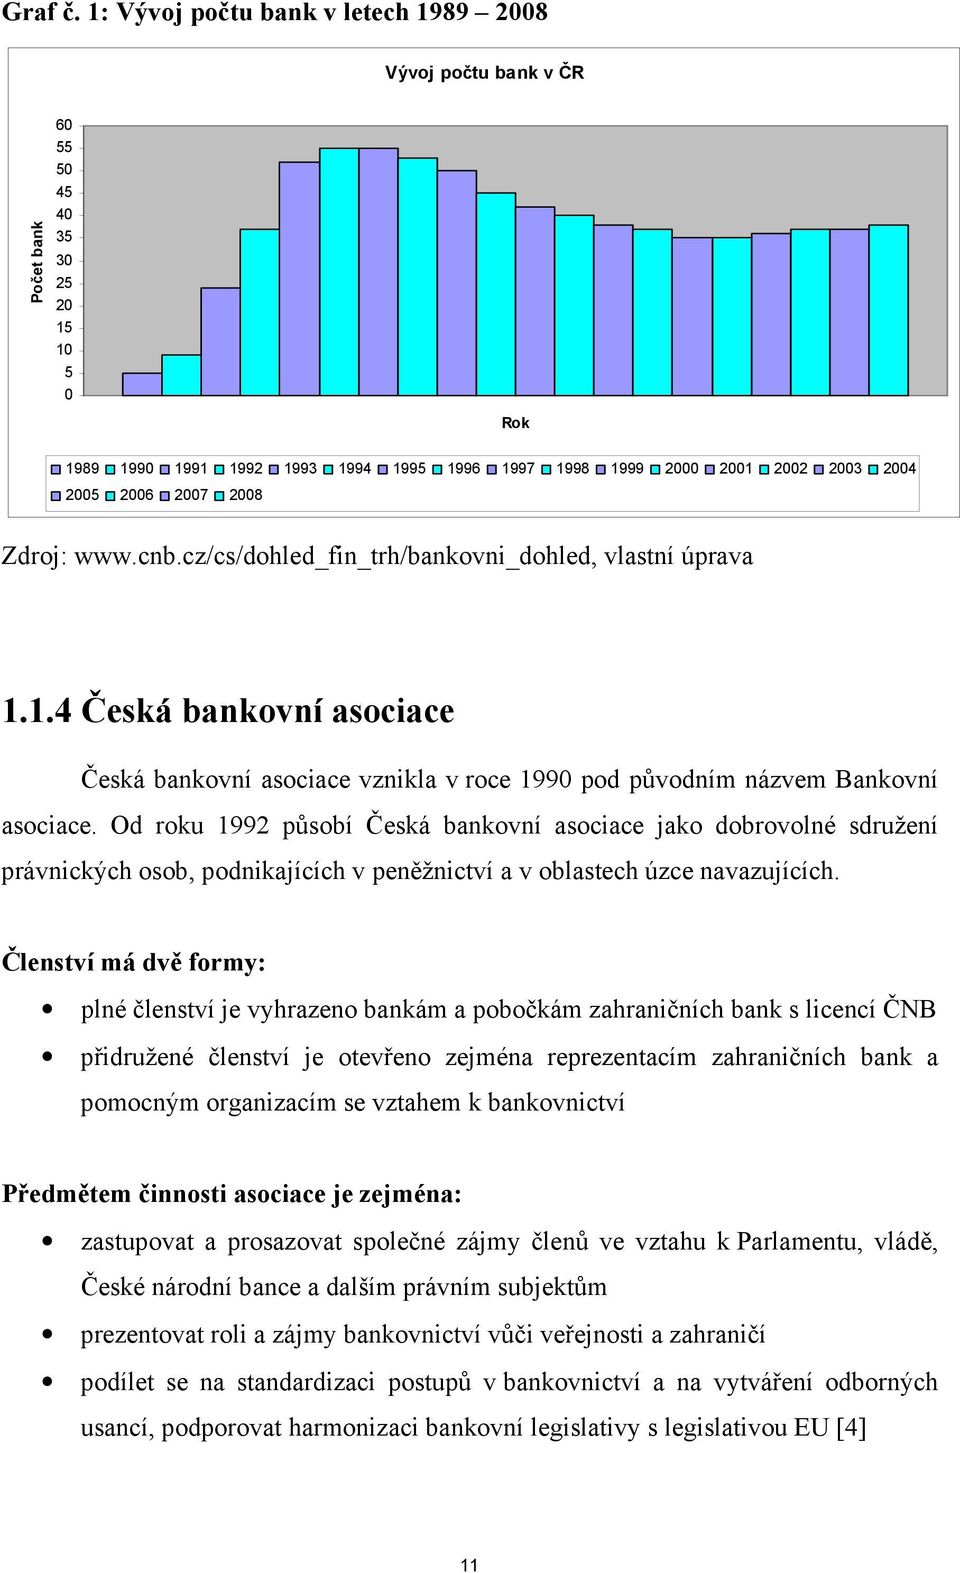 2006 2007 2008 Zdroj: www.cnb.cz/cs/dohled_fin_trh/bankovni_dohled, vlastní úprava 1.1.4 Česká bankovní asociace Česká bankovní asociace vznikla v roce 1990 pod původním názvem Bankovní asociace.